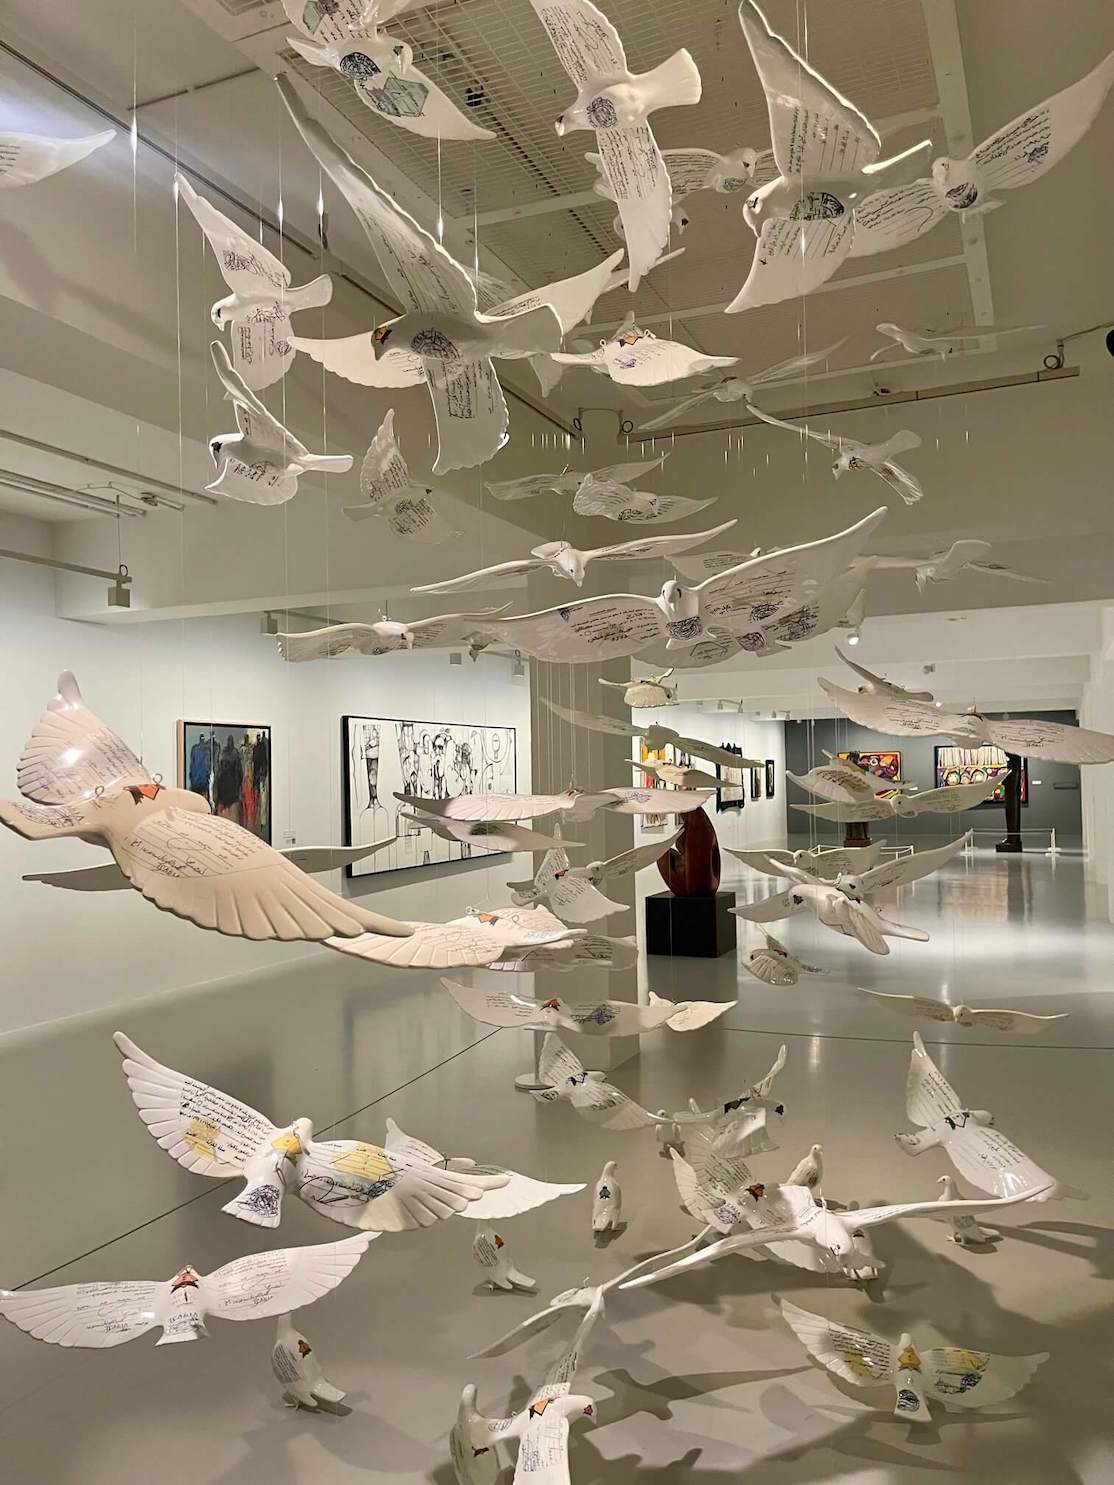 La instalación de arte Suspended Together de Manal Aldowayan en el Museo Árabe de Arte Moderno, Doha, Qatar